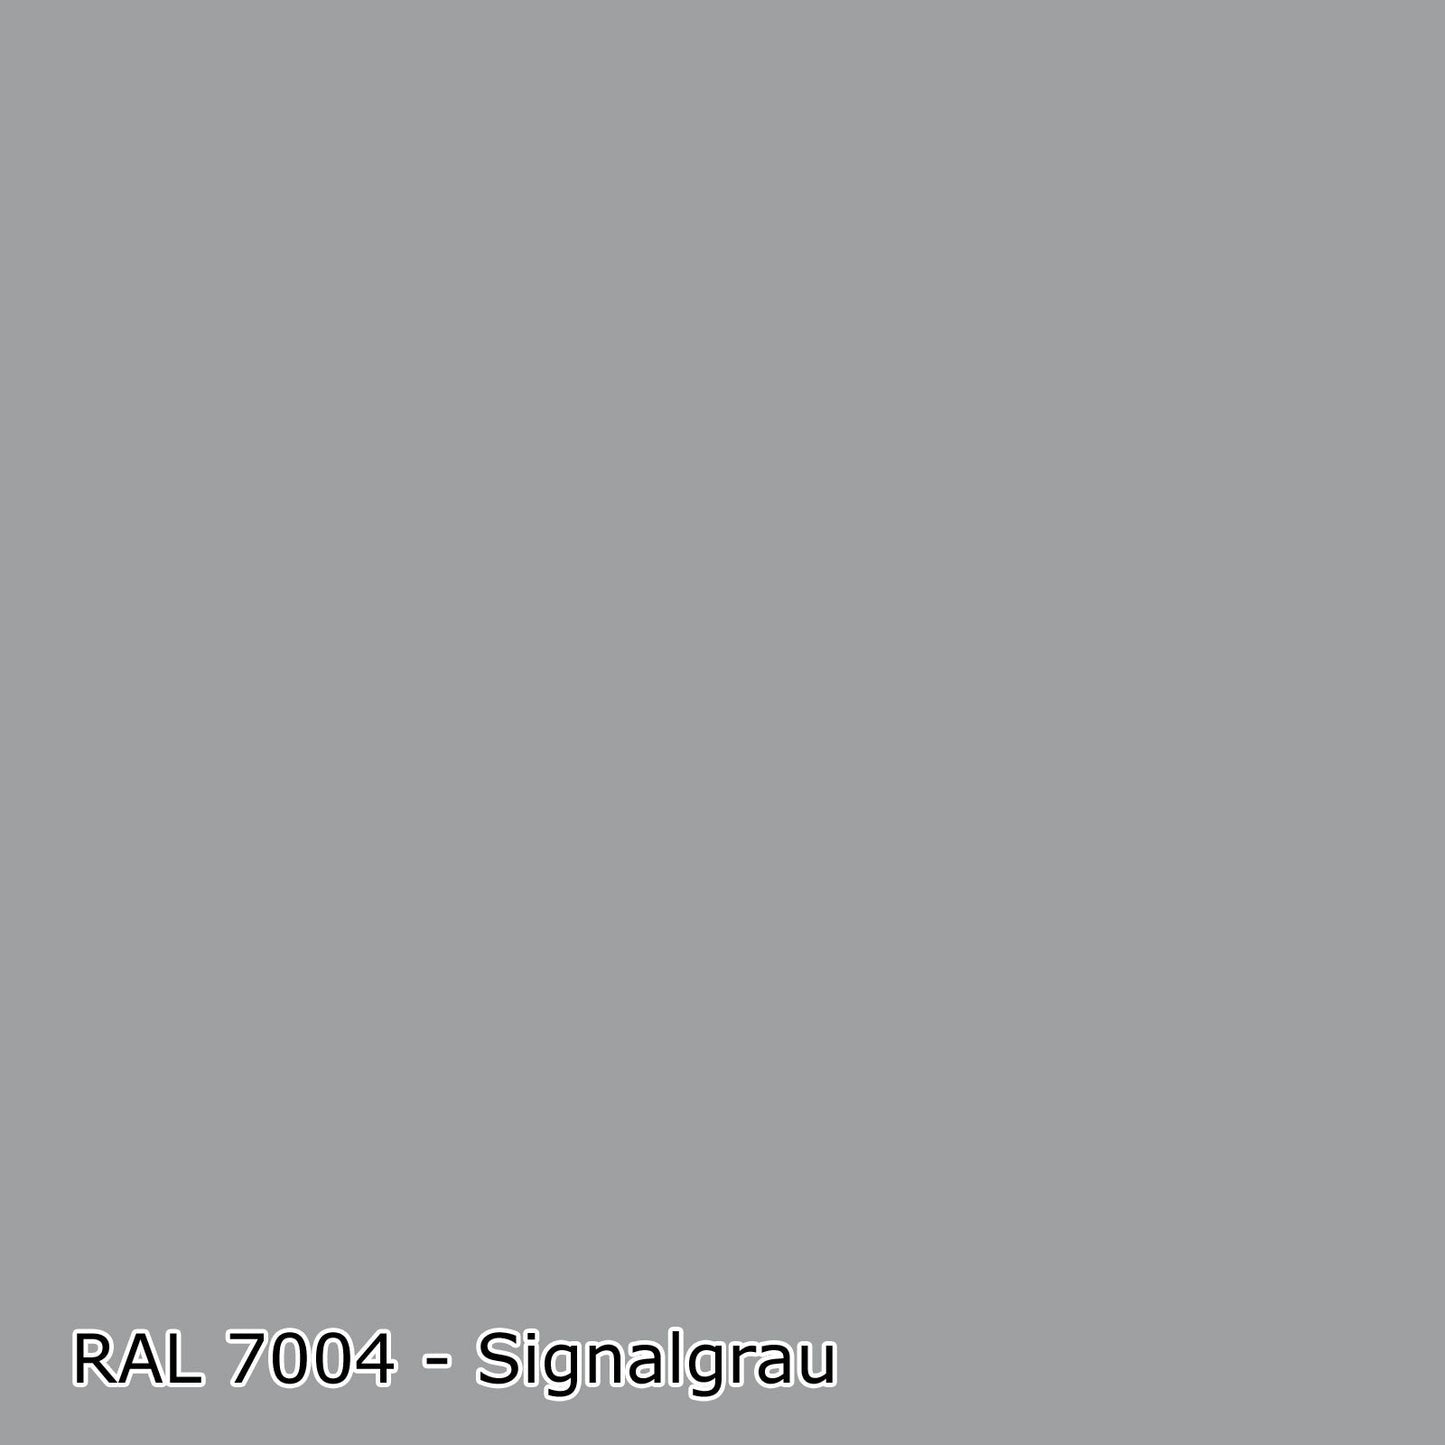 2,5 L Acryl Fassadenfarbe, RAL Farbwahl - MATT (RAL 6008 - 9018)